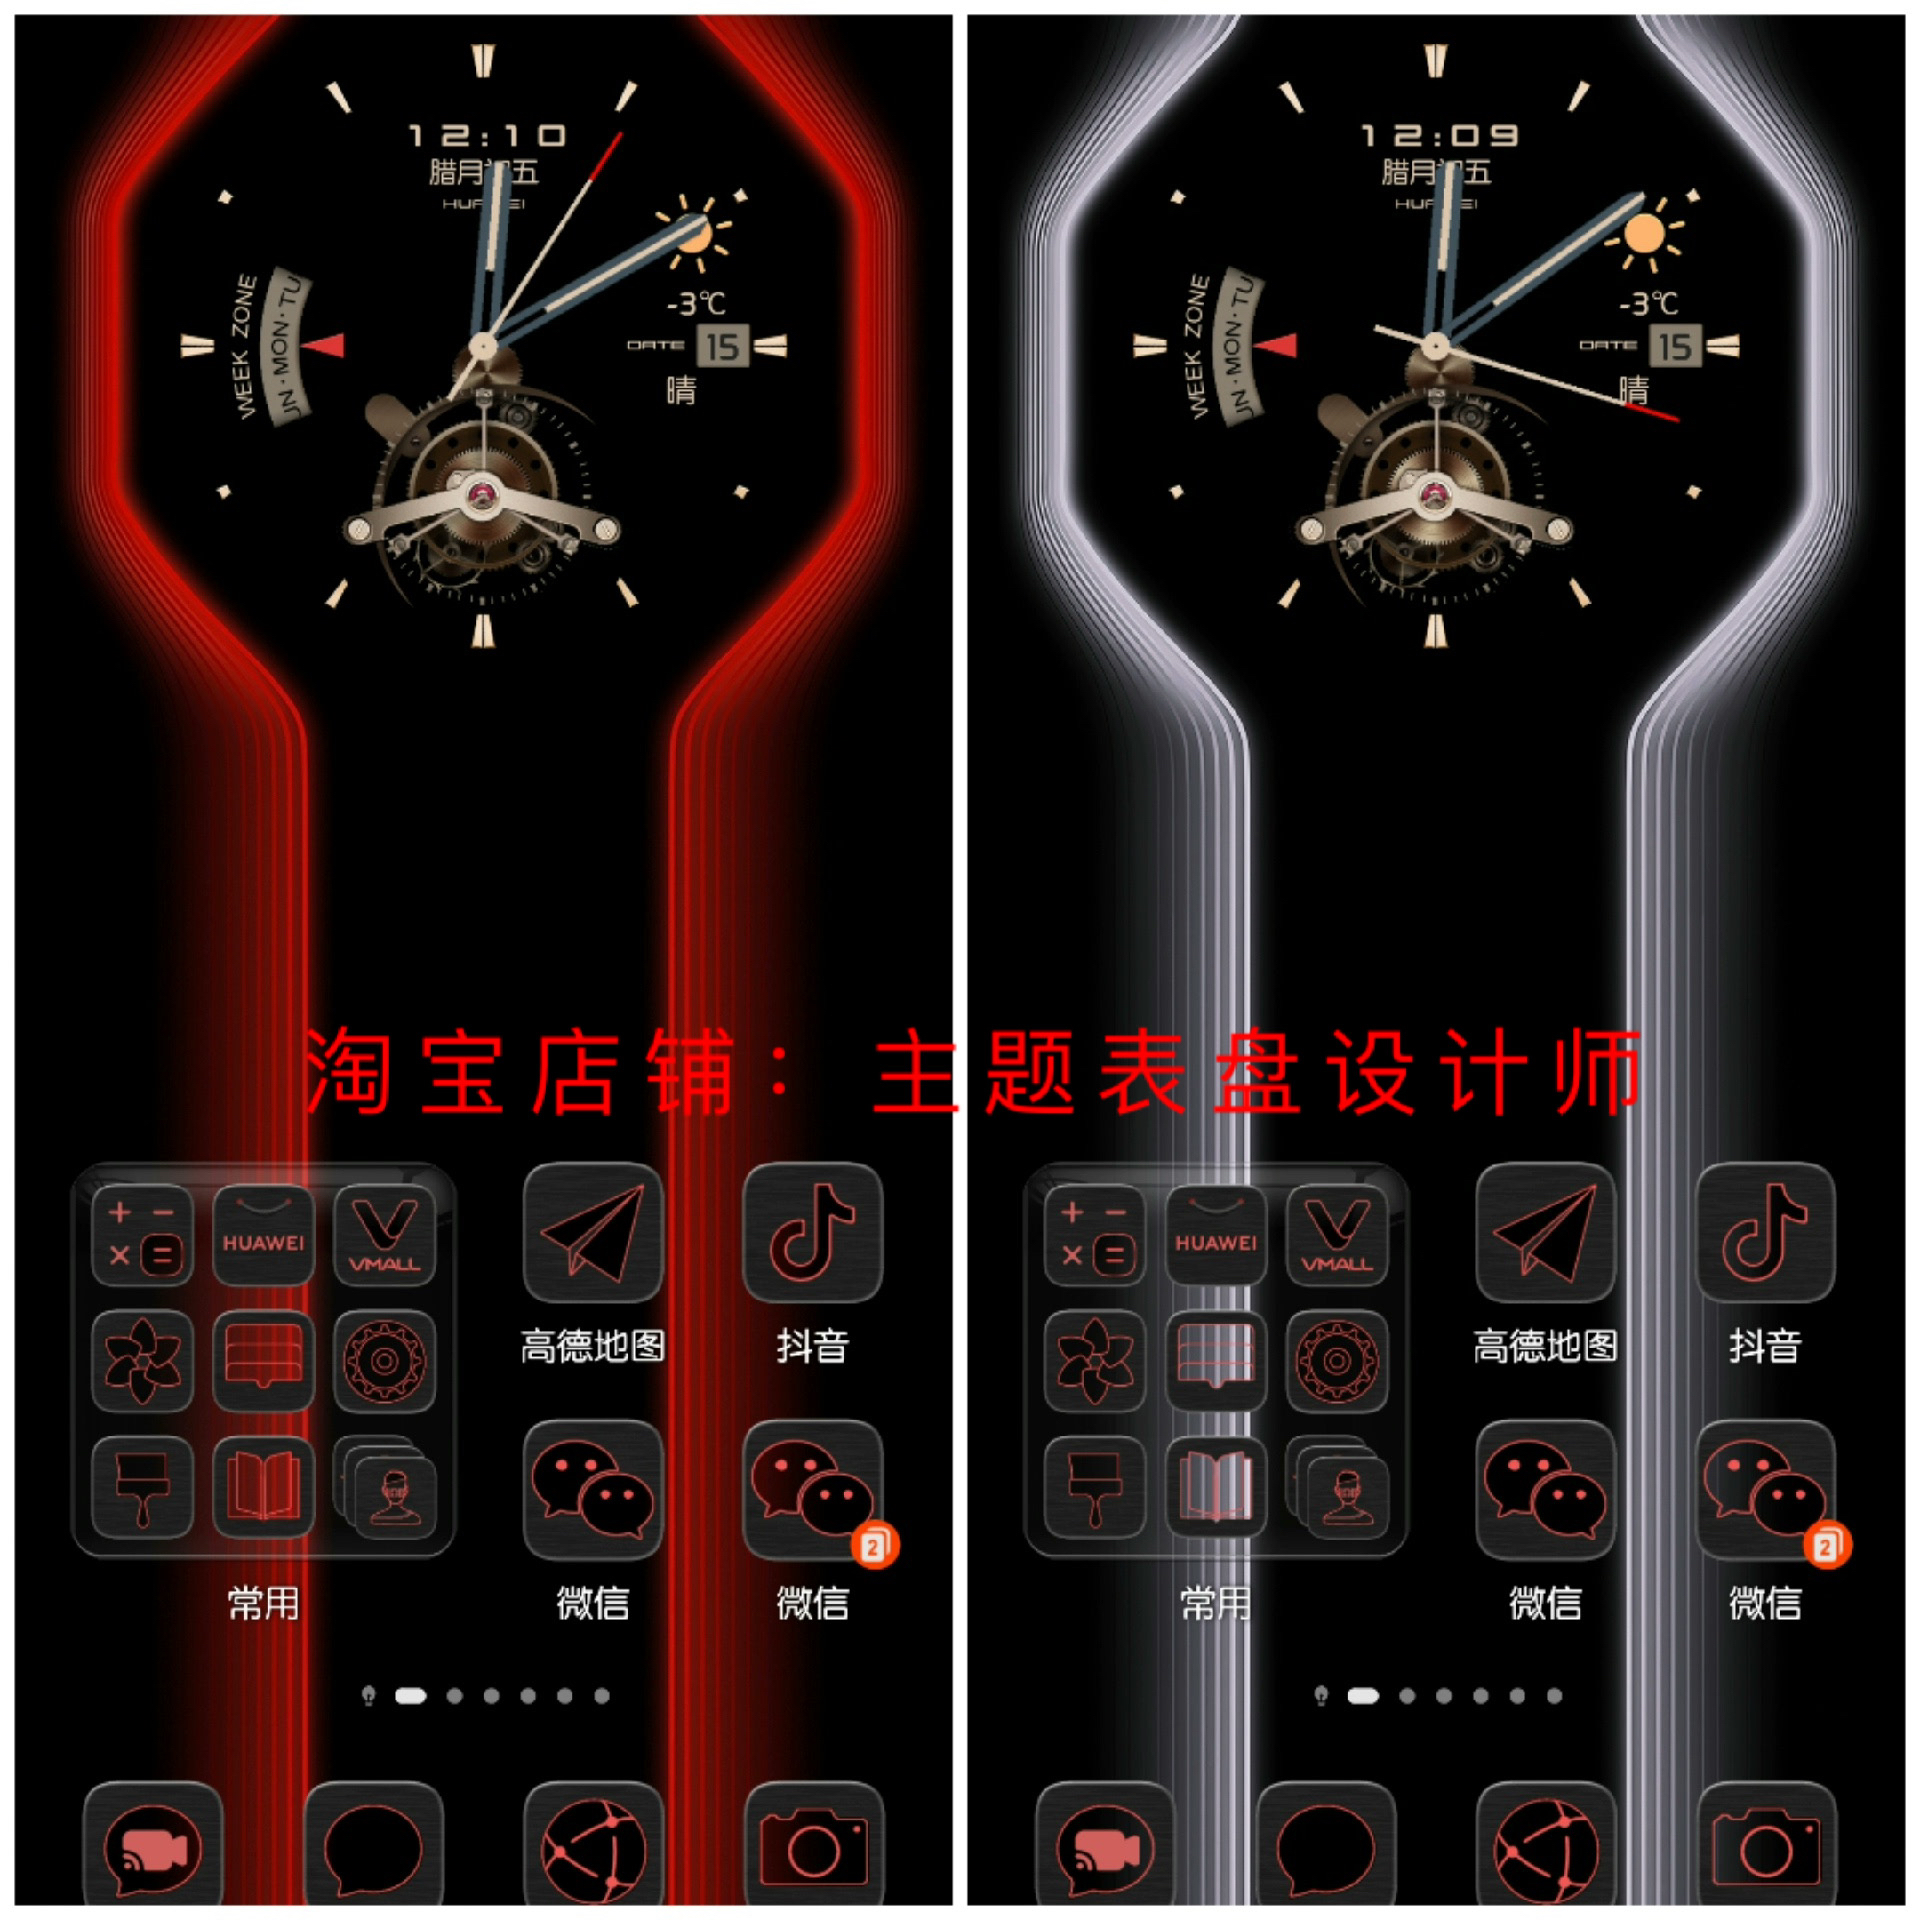 24款新版华为x5高级钟表保时捷主题动态钟表全局适配鸿蒙4.0版